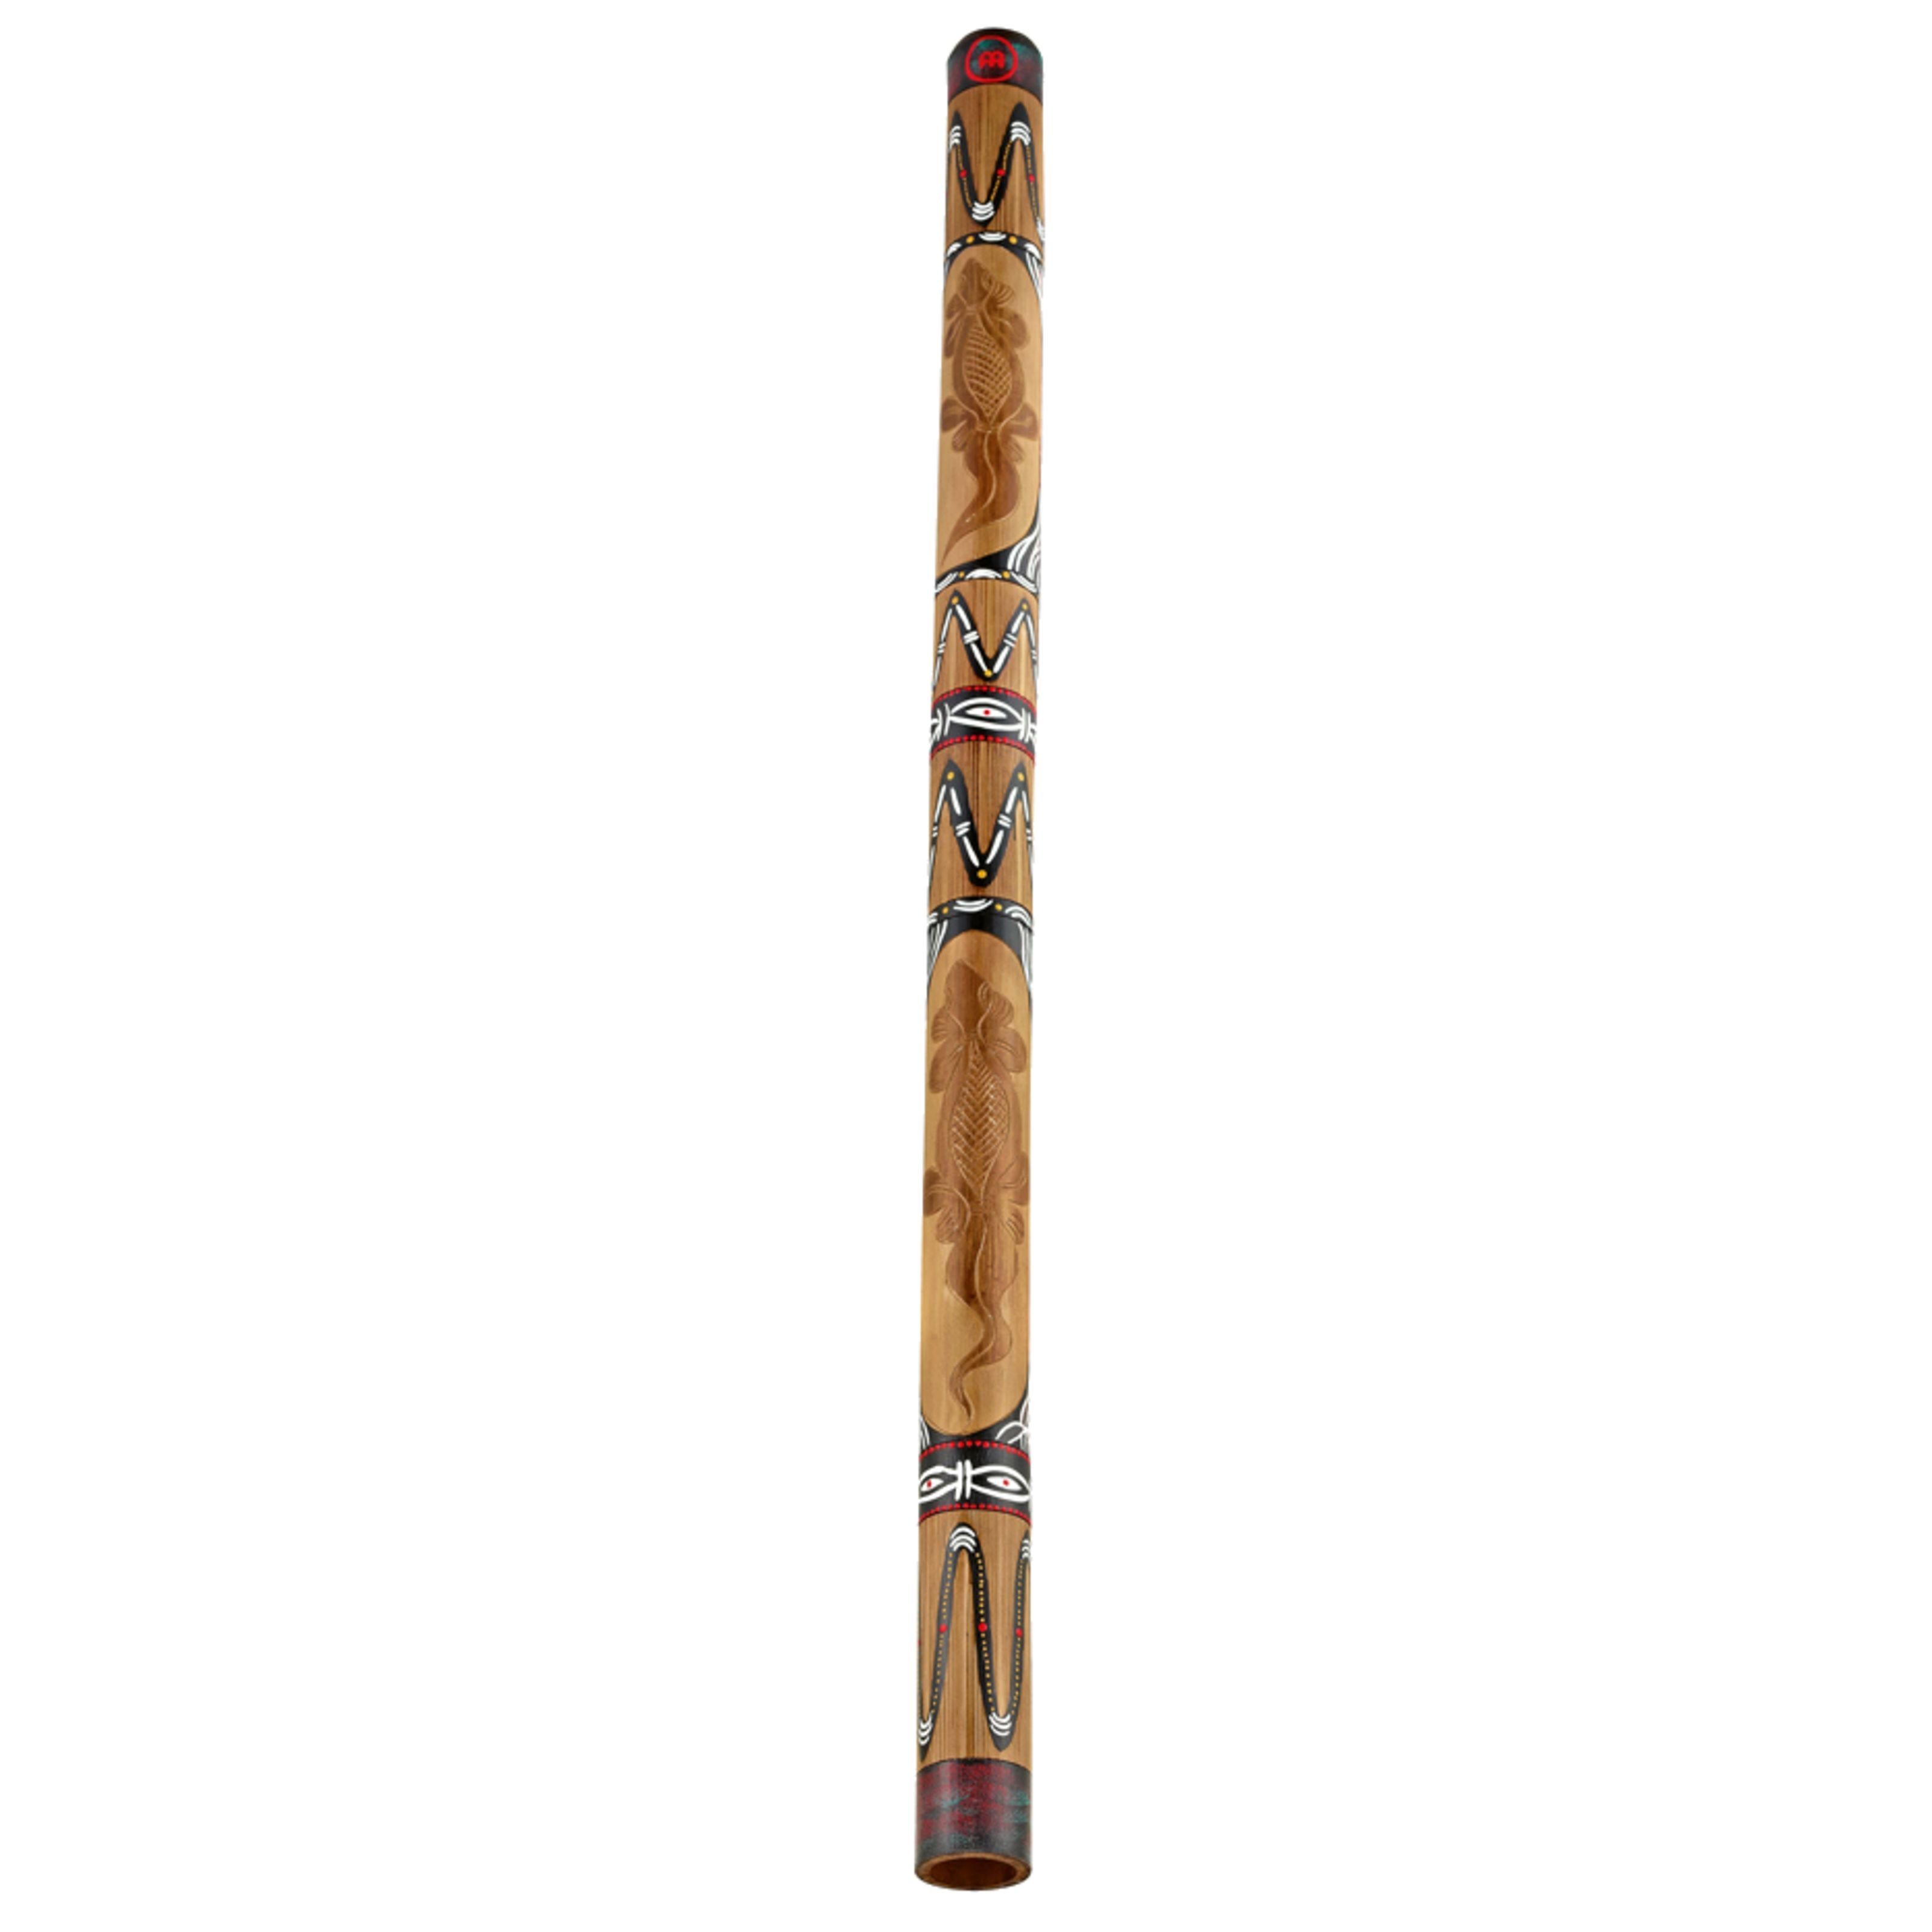 Meinl Percussion Didgeridoo, Bamboo Didgeridoo DDG1-BR, Brown, Bamboo Didgeridoo DDG1-BR, Brown